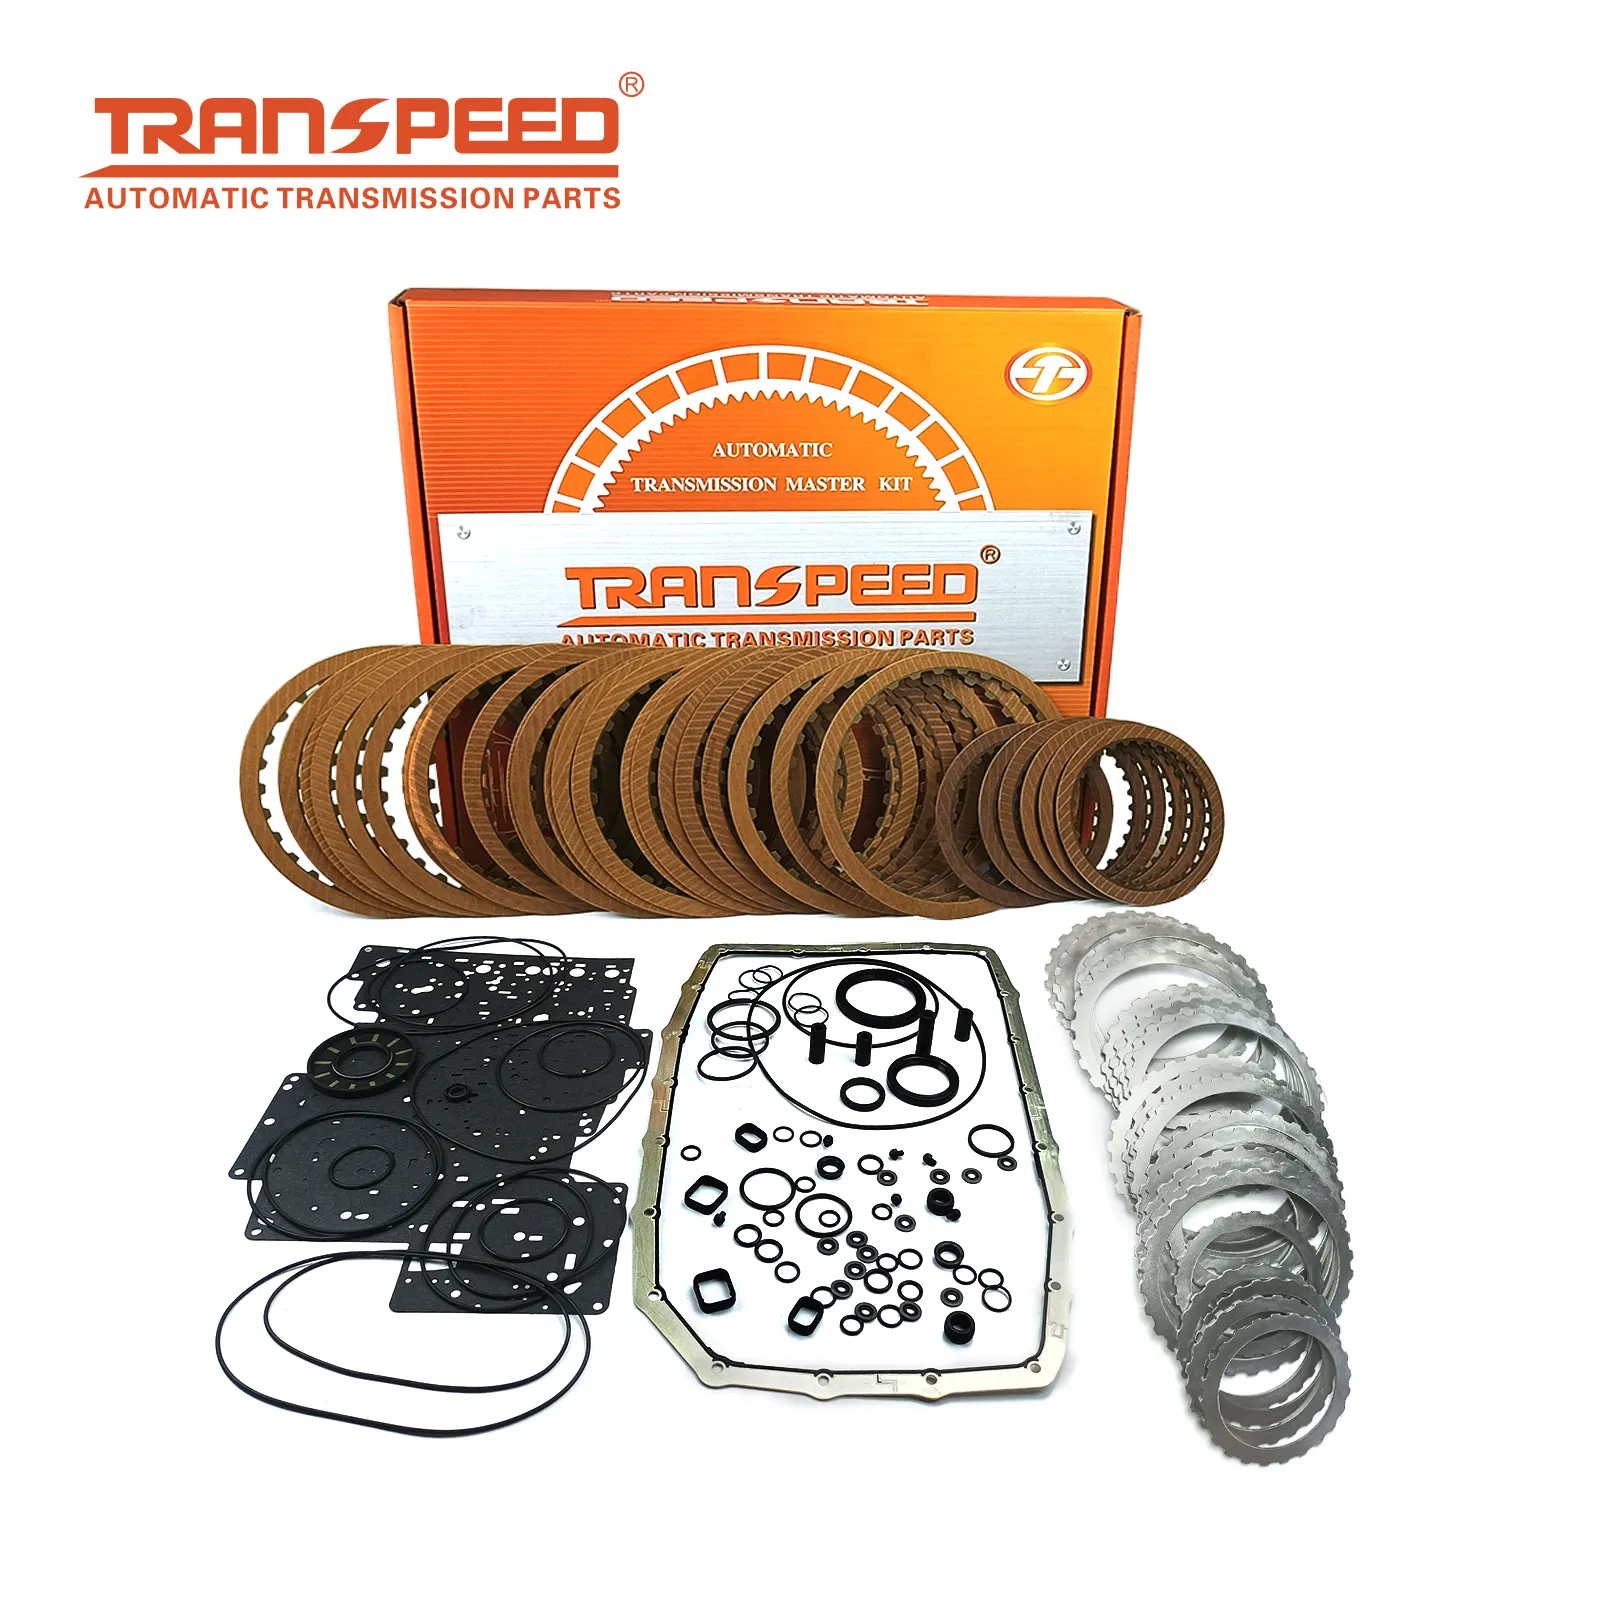 TRANSPEED Brand New 6R80 Tự Động Truyền Động Xây Dựng Lại Master Đại Tu Kit Hộp Số Sửa Chữa Bộ Phận Bộ Dụng Cụ